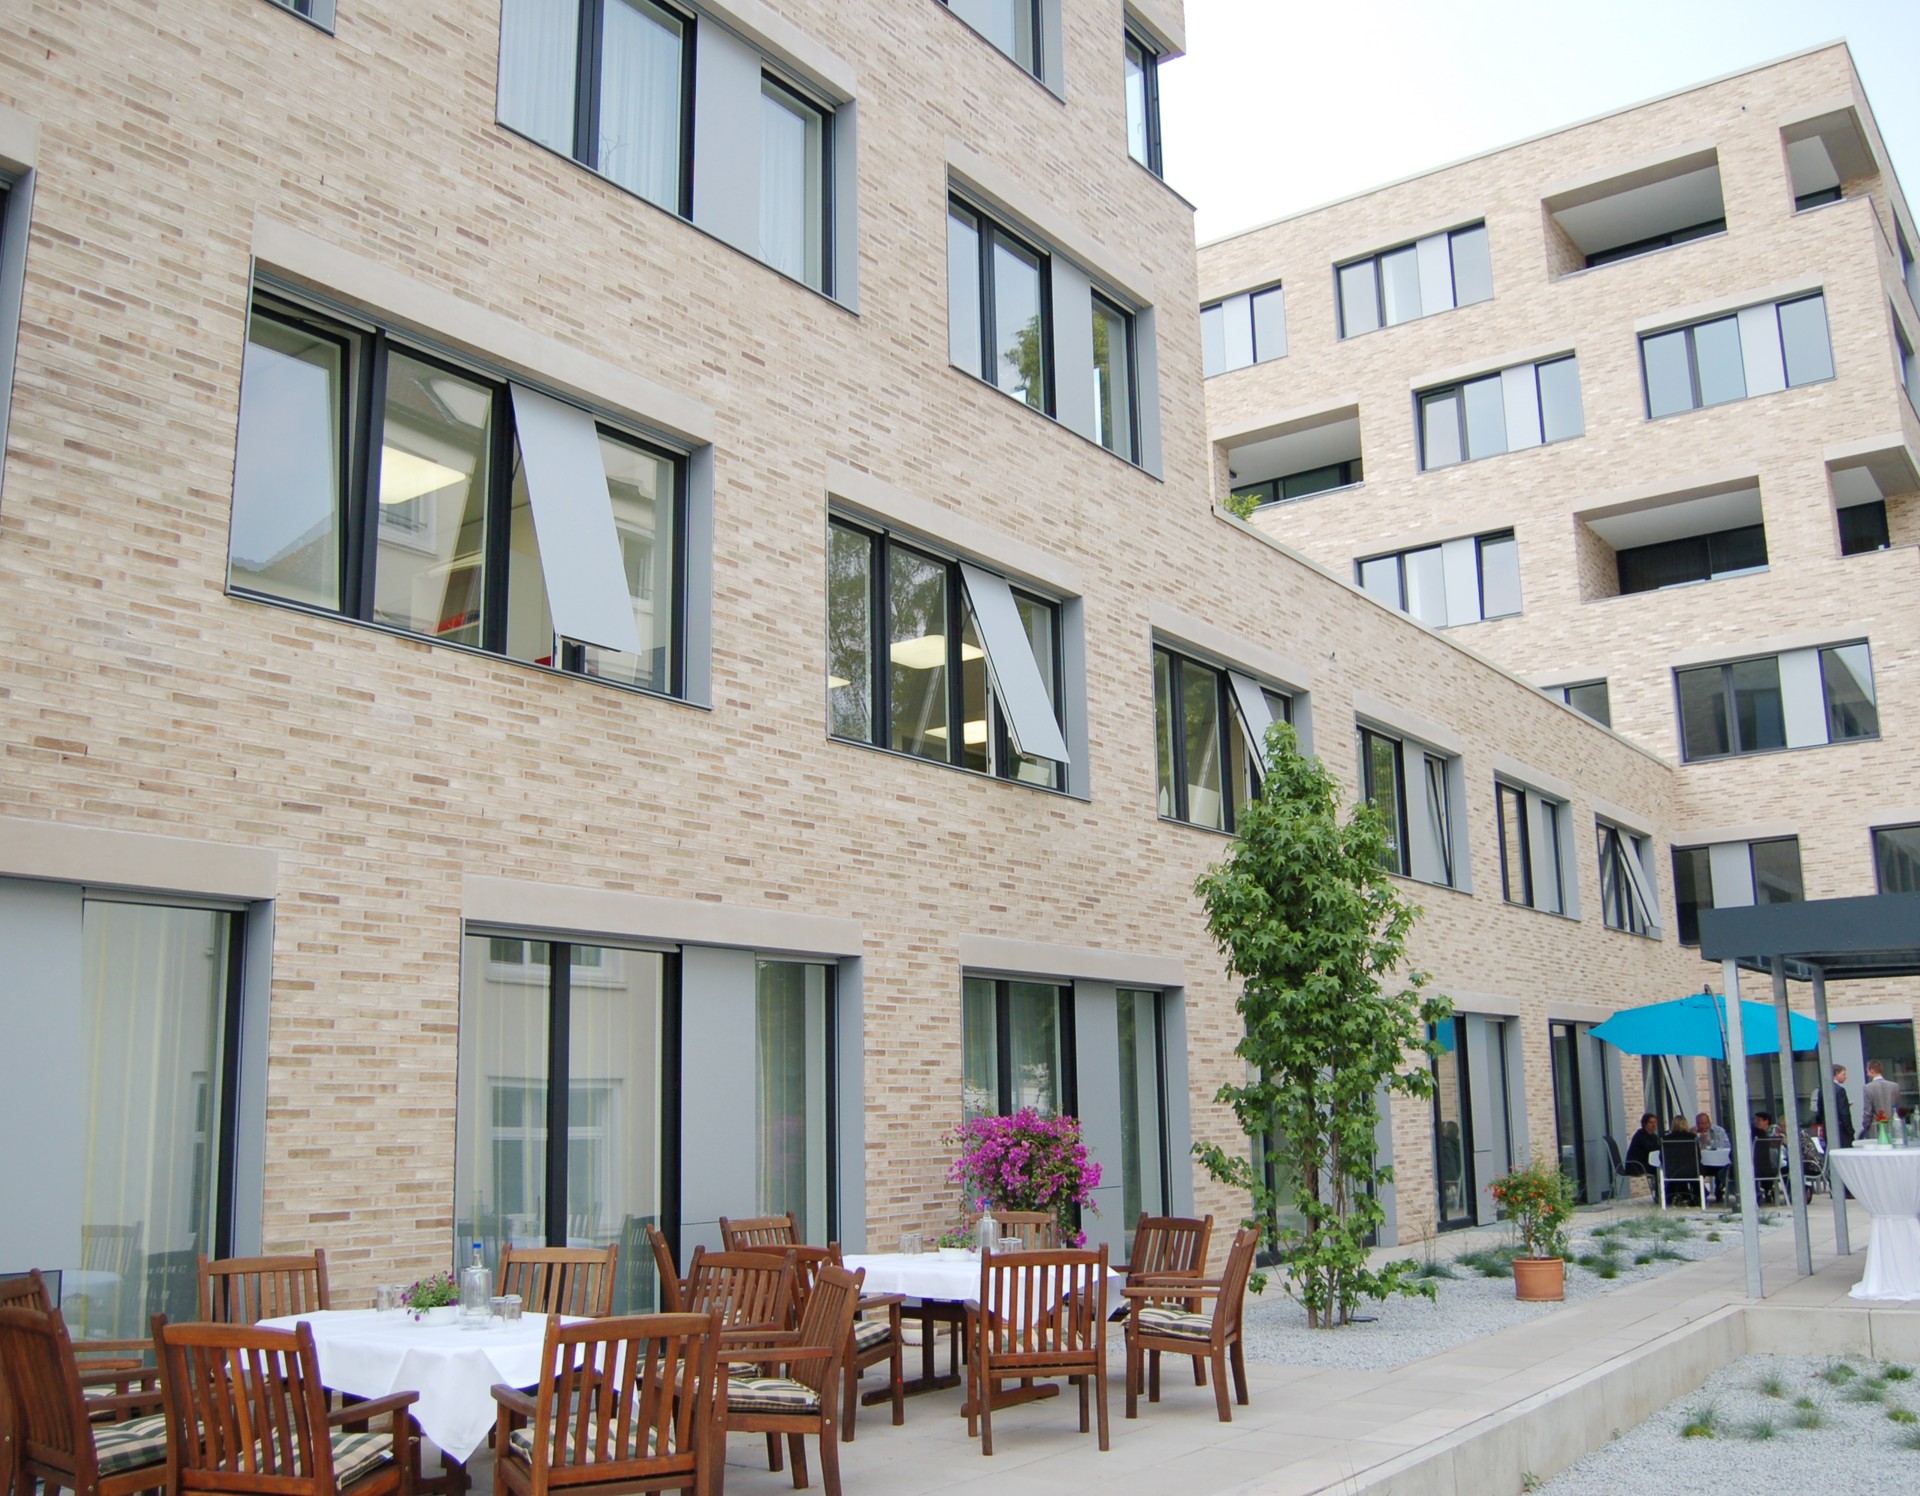 Das moderne hell-beige Gebäude an der Zumsandestraße, davor eine Terrasse mit zwei hölzernen Tischgruppen, daneben ein grüner Strauch